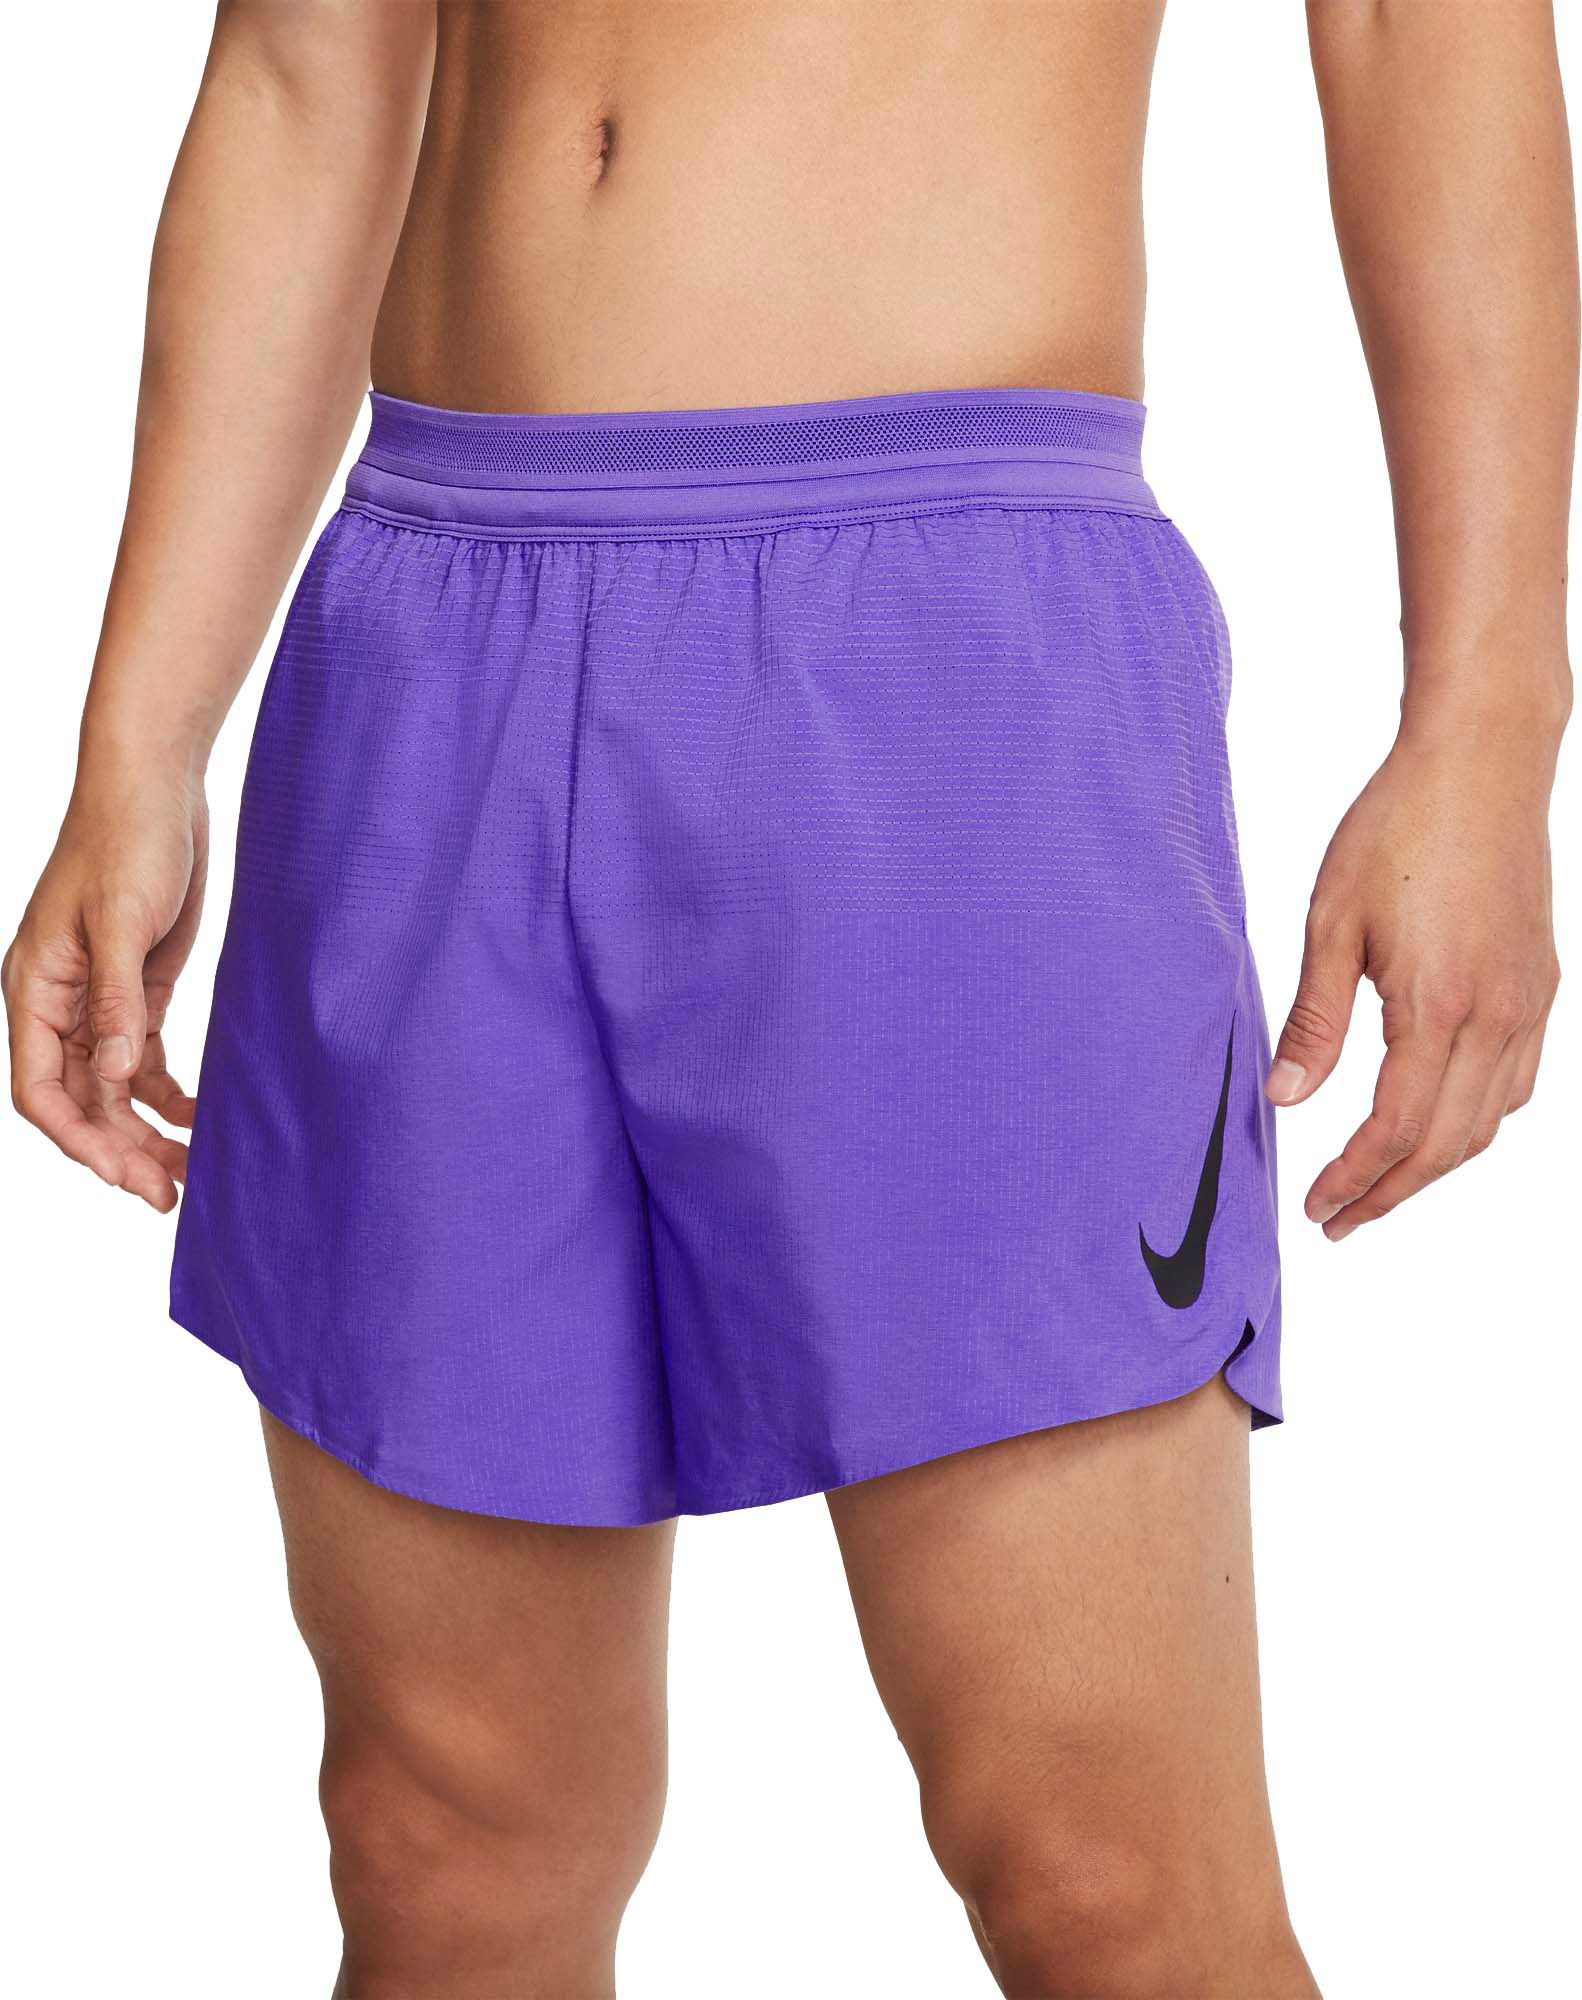 lavender nike shorts